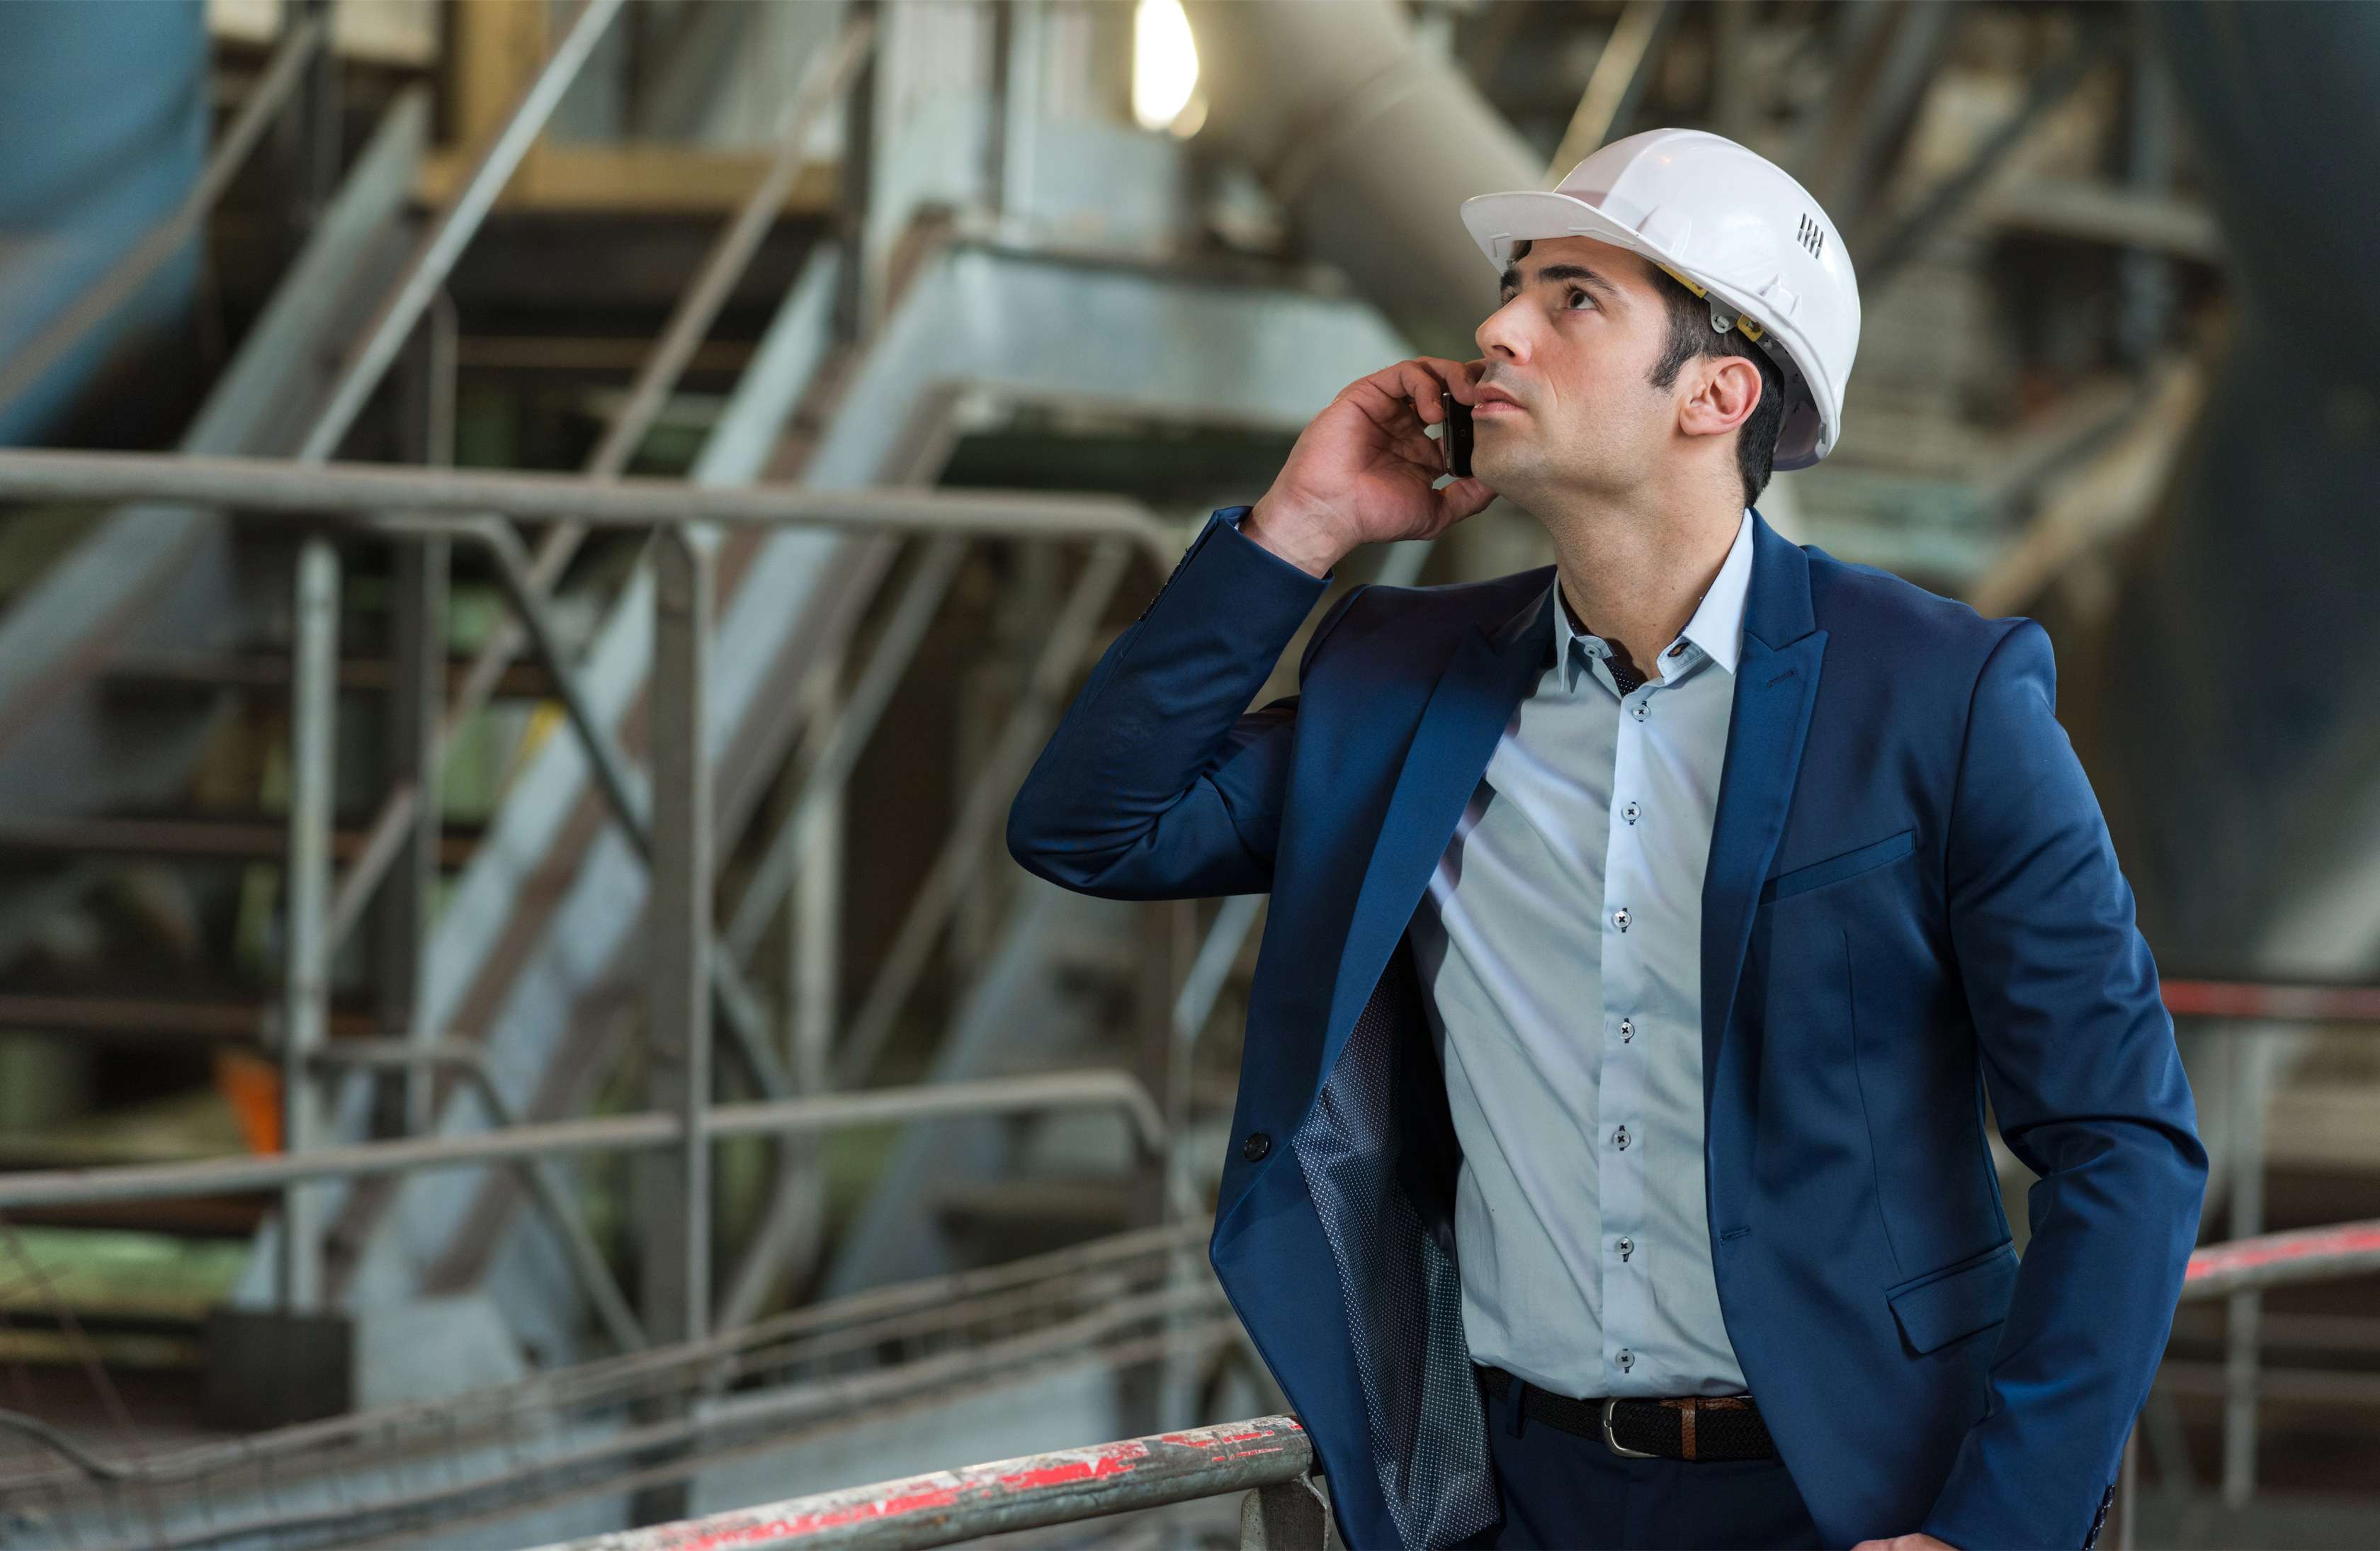 Ein Ingenieur im blauen Anzug und weißem Helm telefoniert und schaut zu einer Pumpe